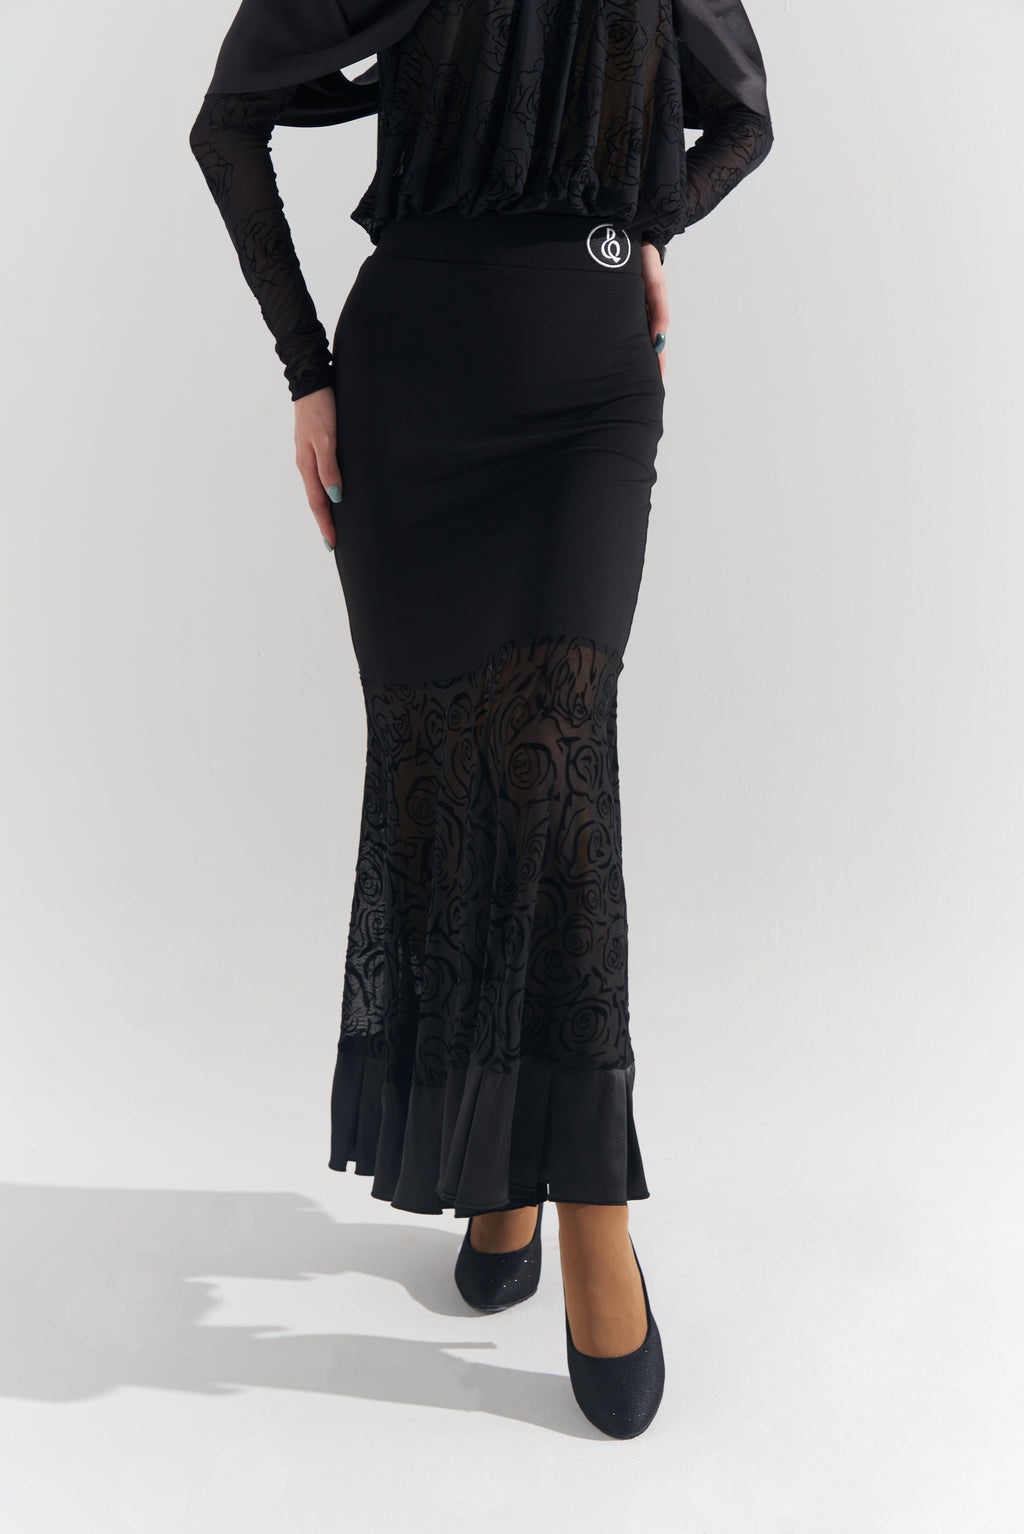 DQ-576 Black Rose Modern Skirt